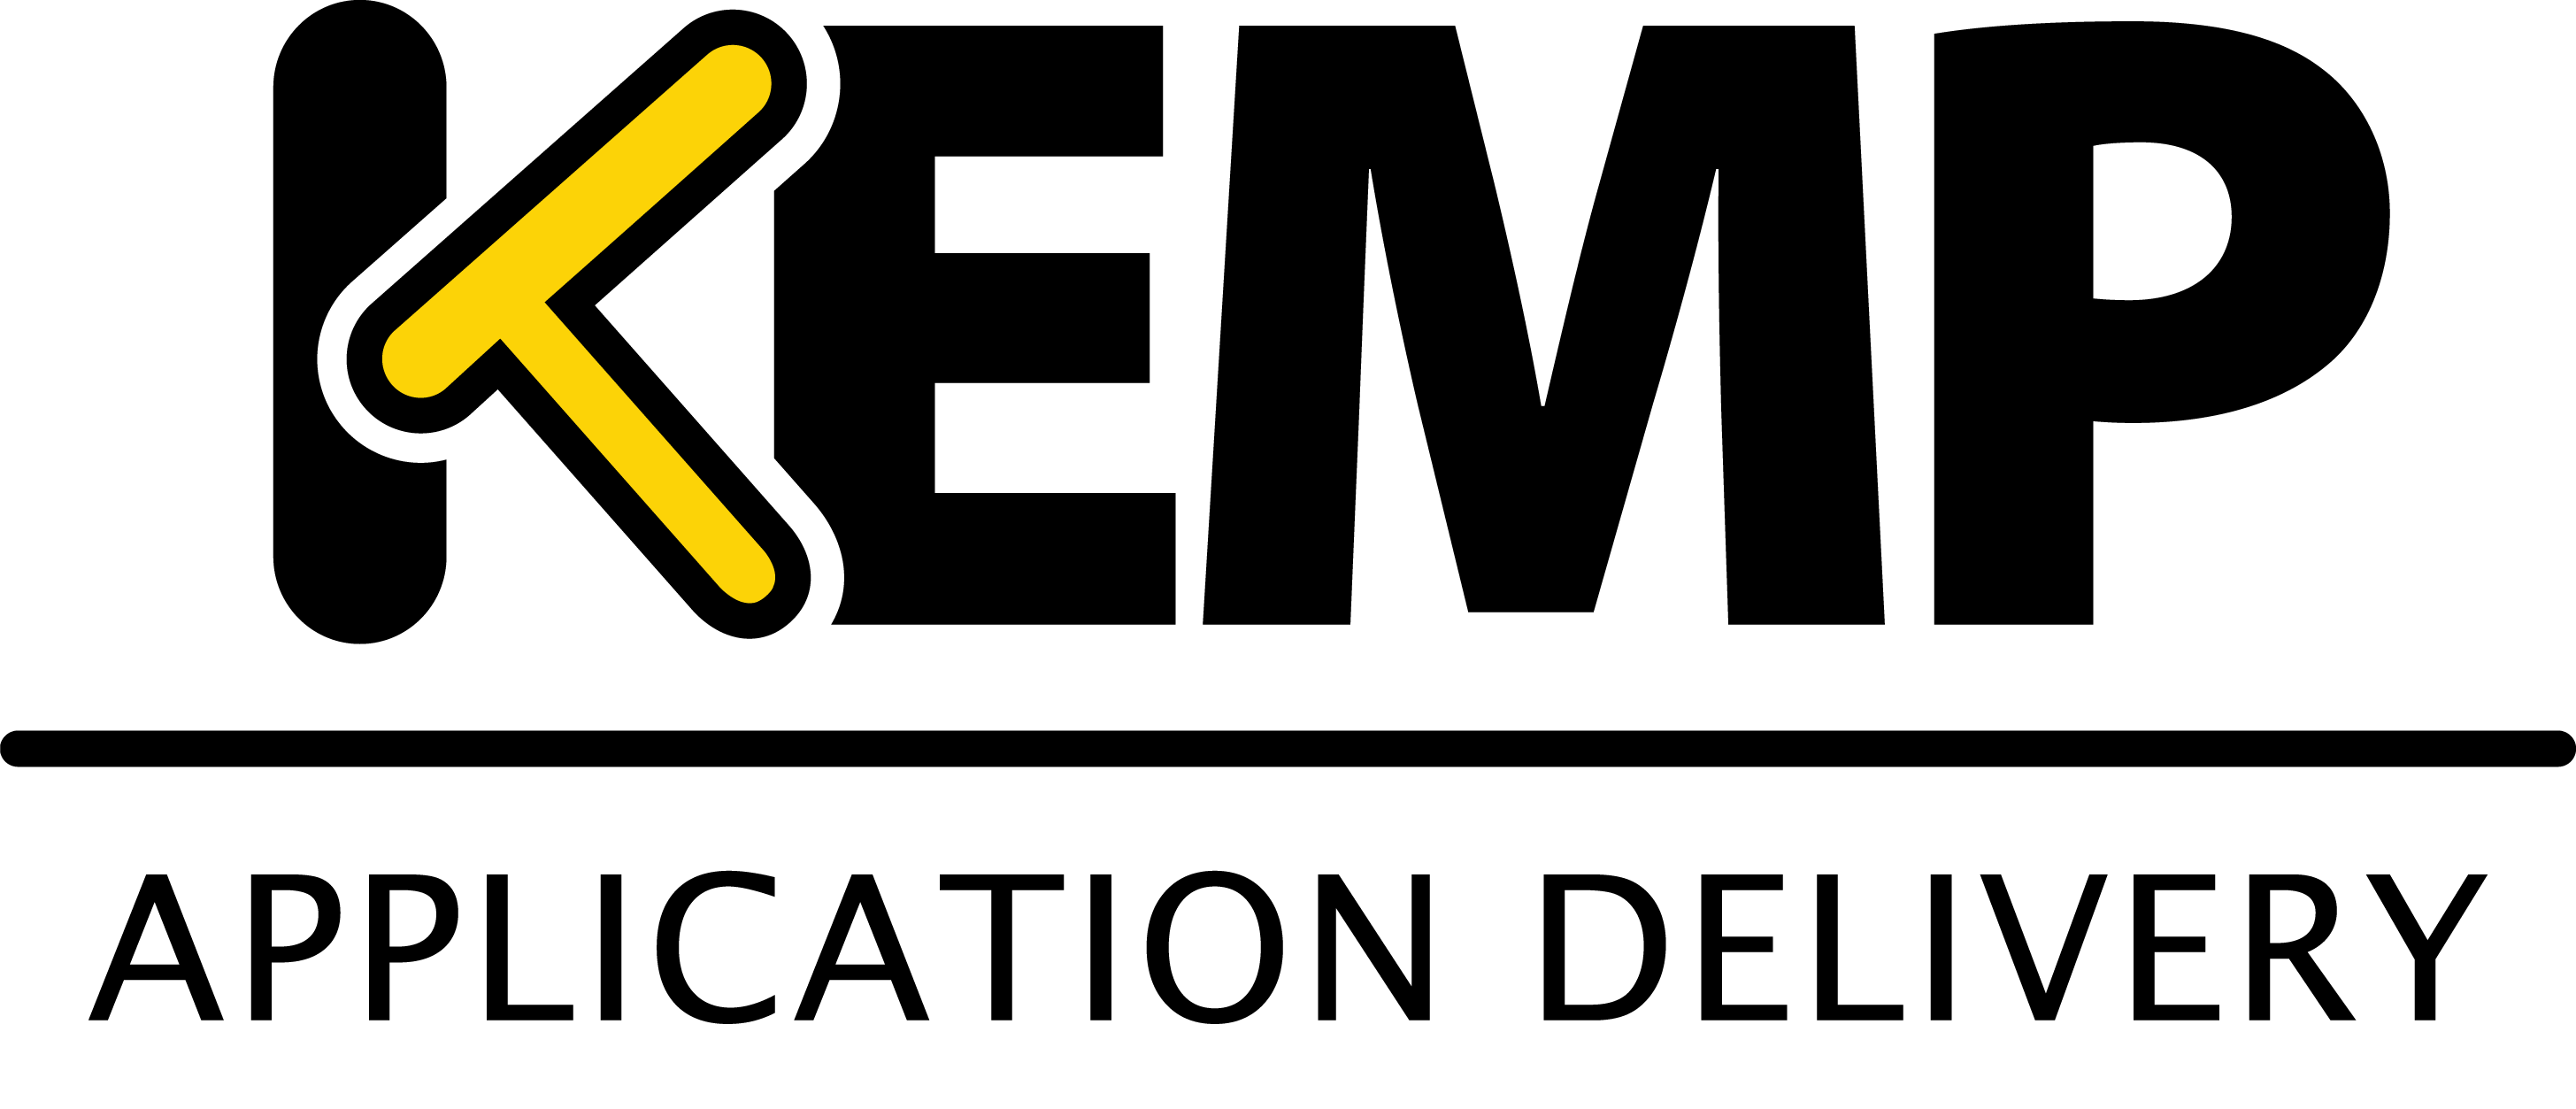 Kemp Logo - KEMP LOGO